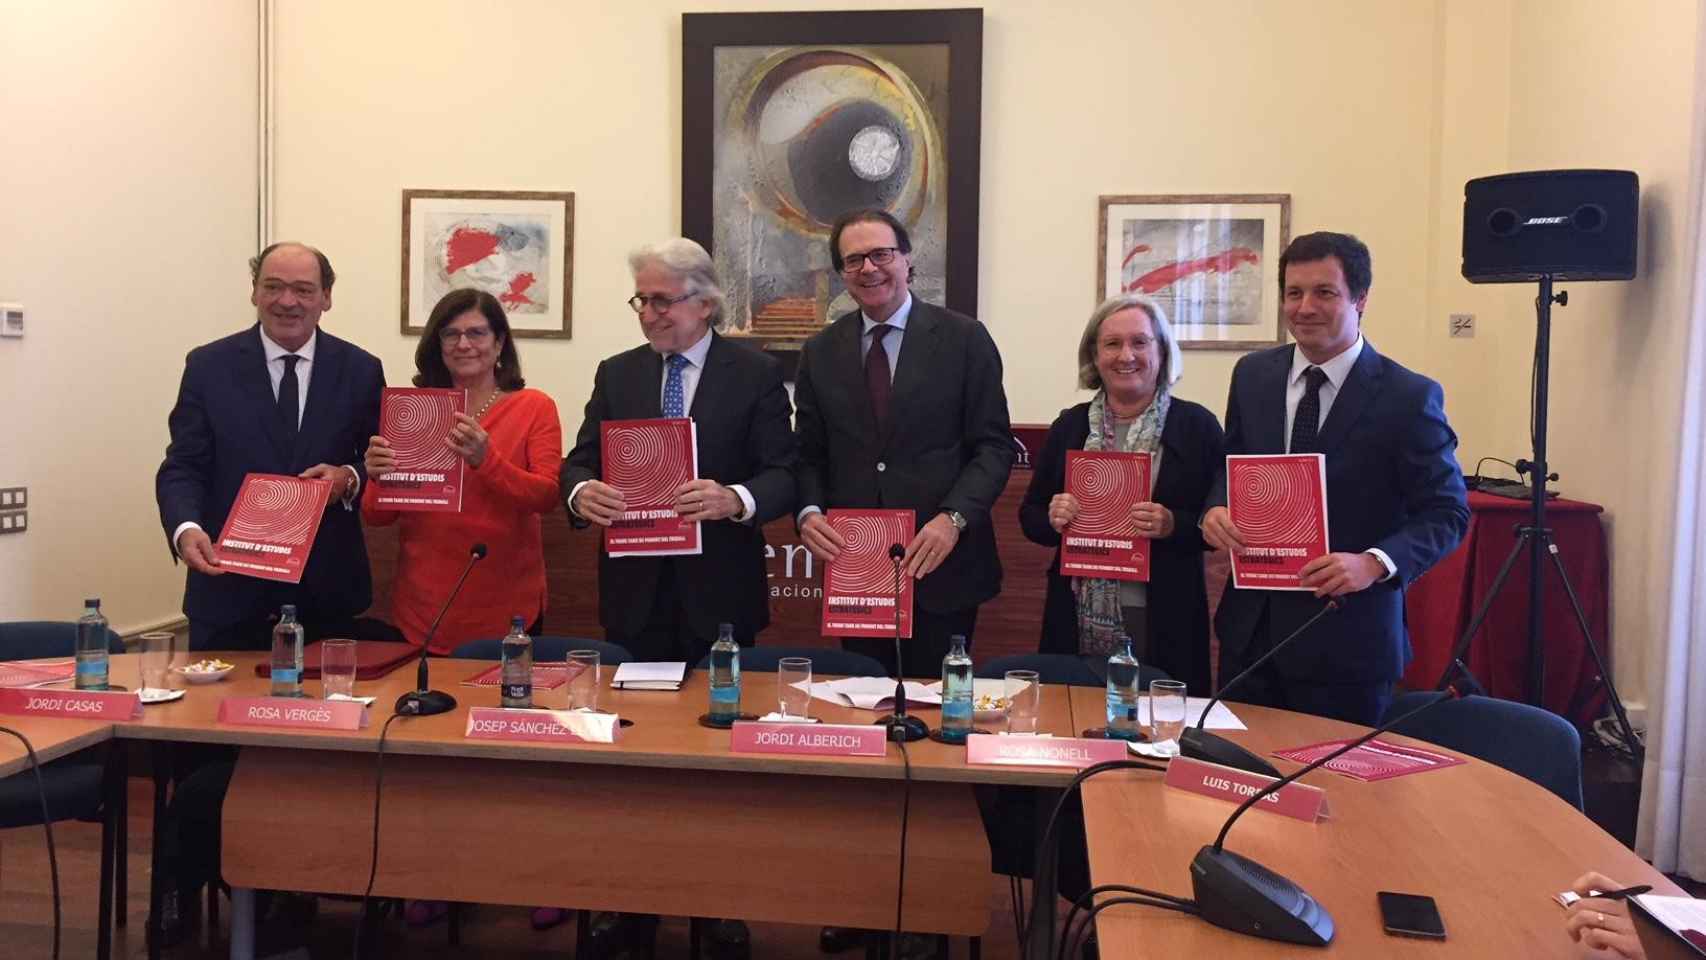 Jordi Casas, Rosa Vergés, Josep Sánchez Llibre, Jordi Alberich, Rosa Nonell y Luis Torras, en la sede de Foment /CG